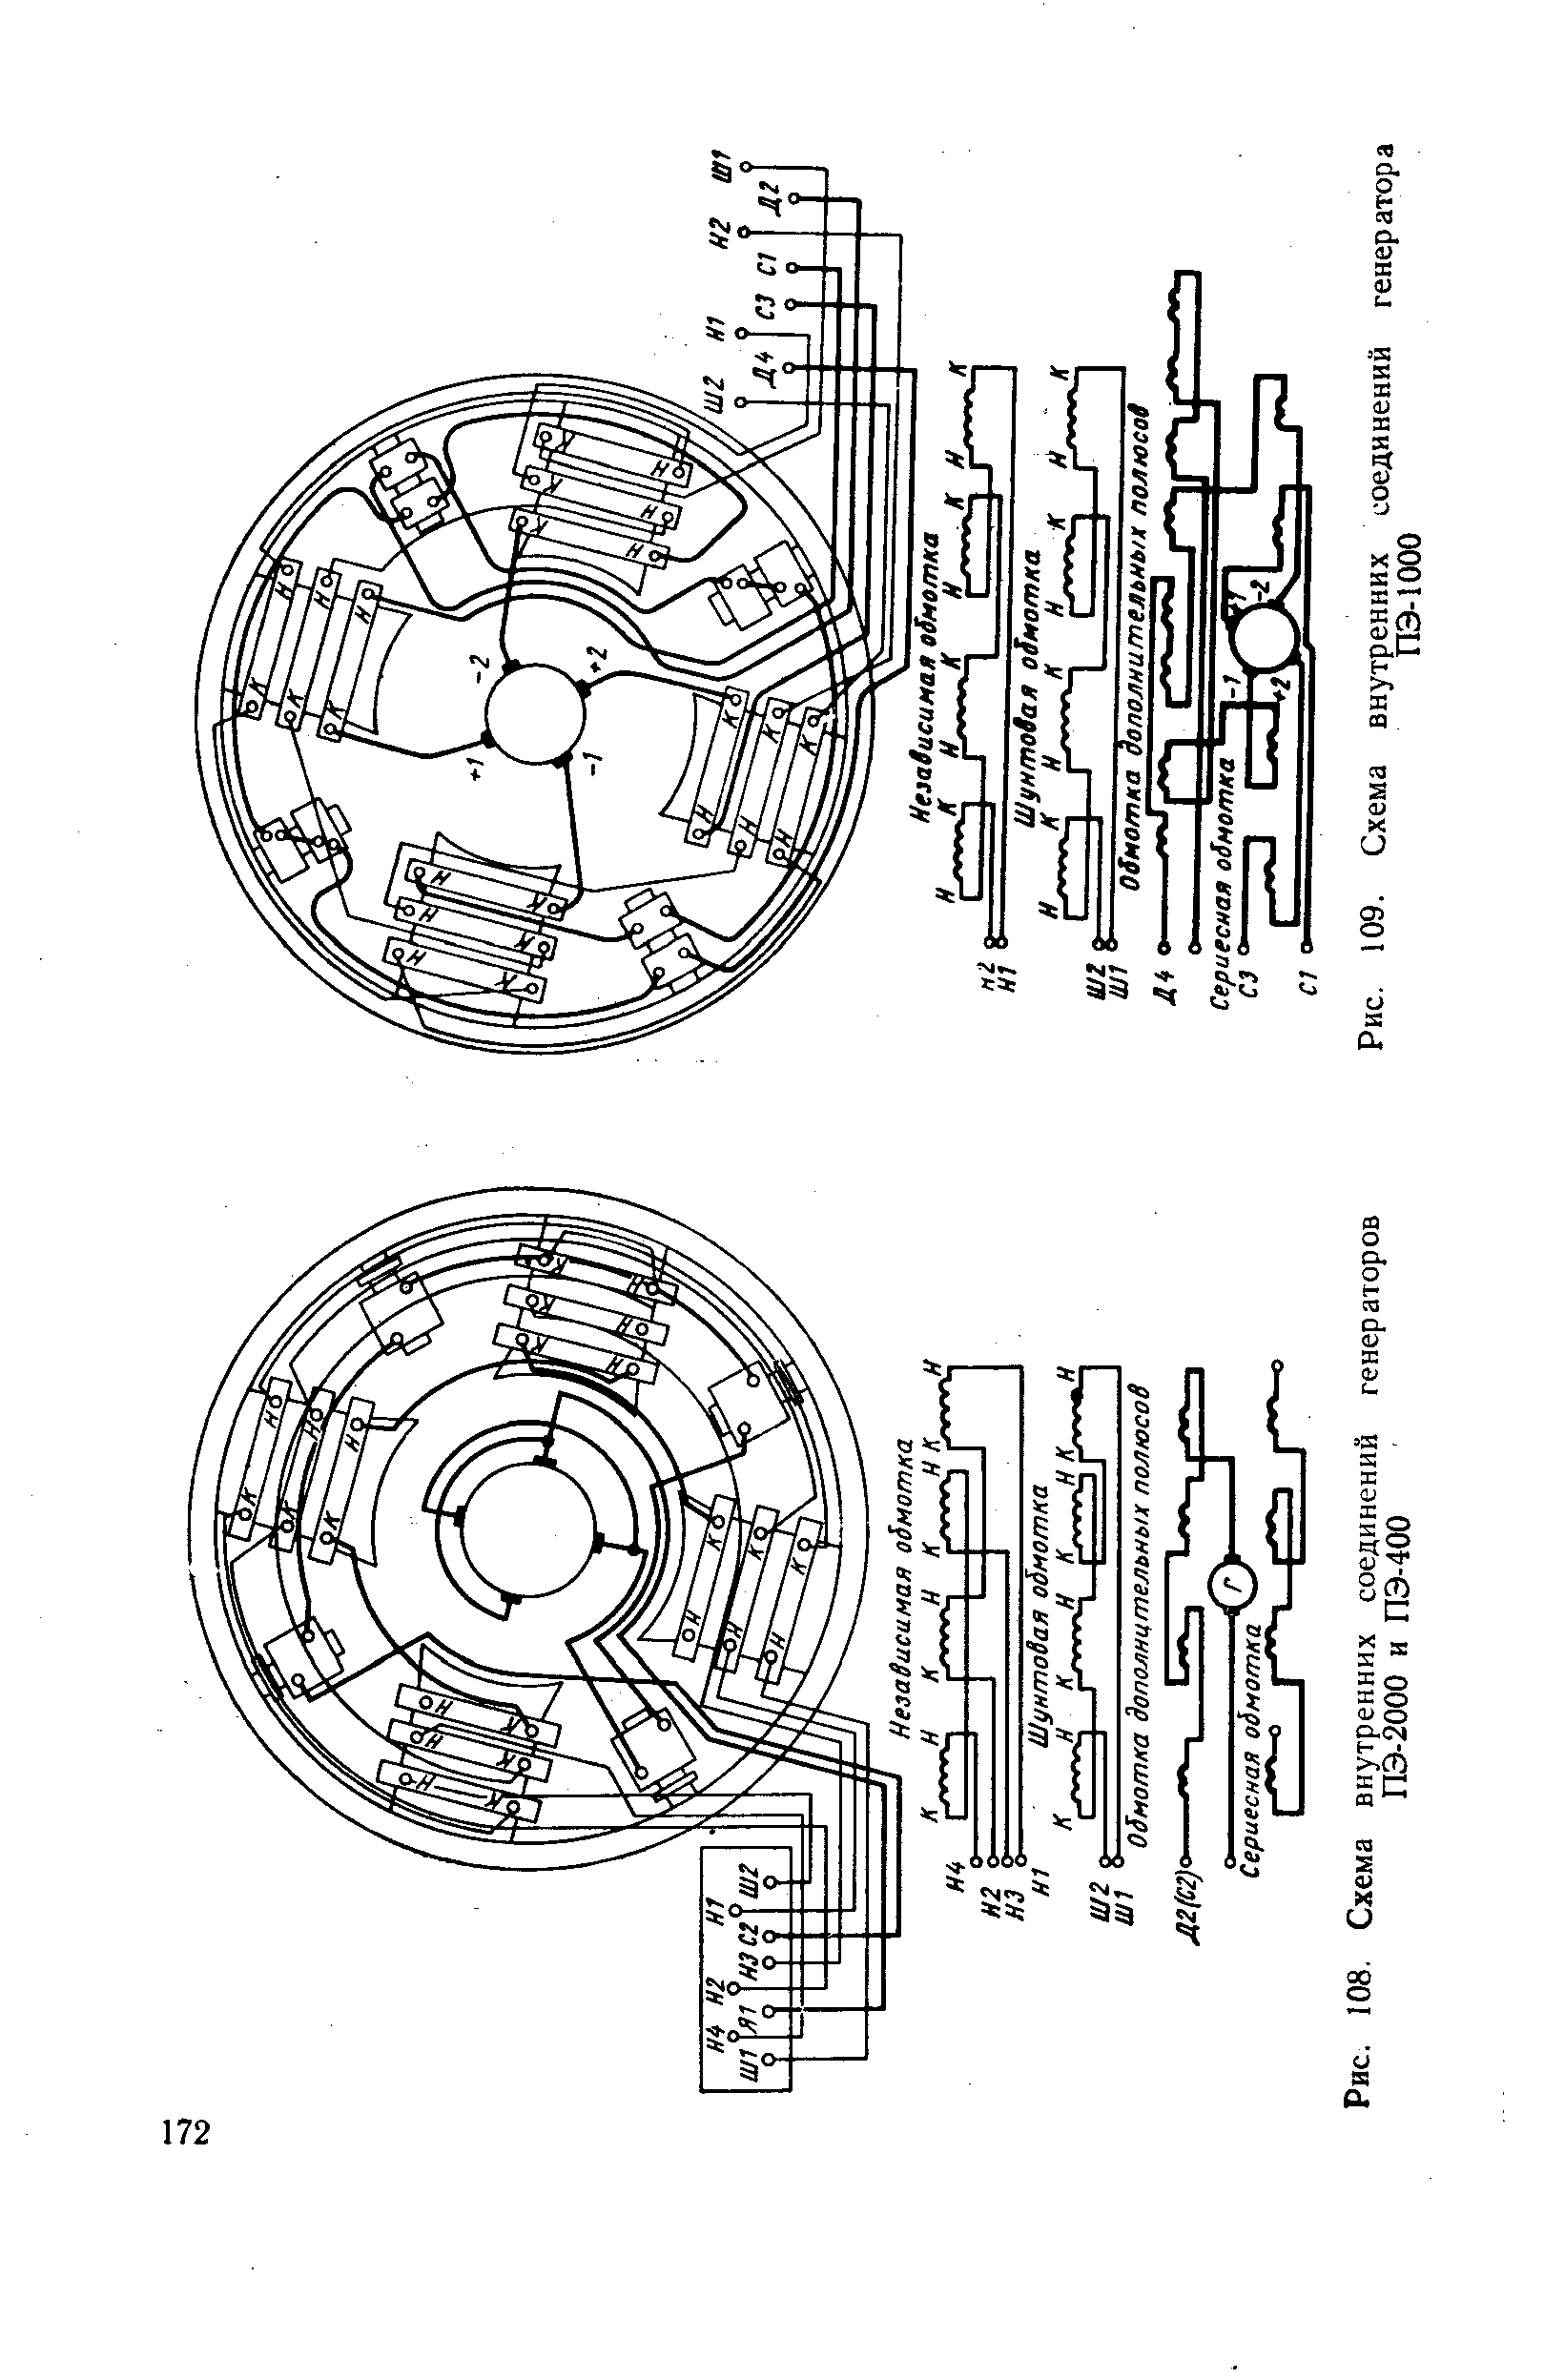 Рис. 108. Схема внутренних соединений генераторов ПЭ-2000 и ПЭ-400
